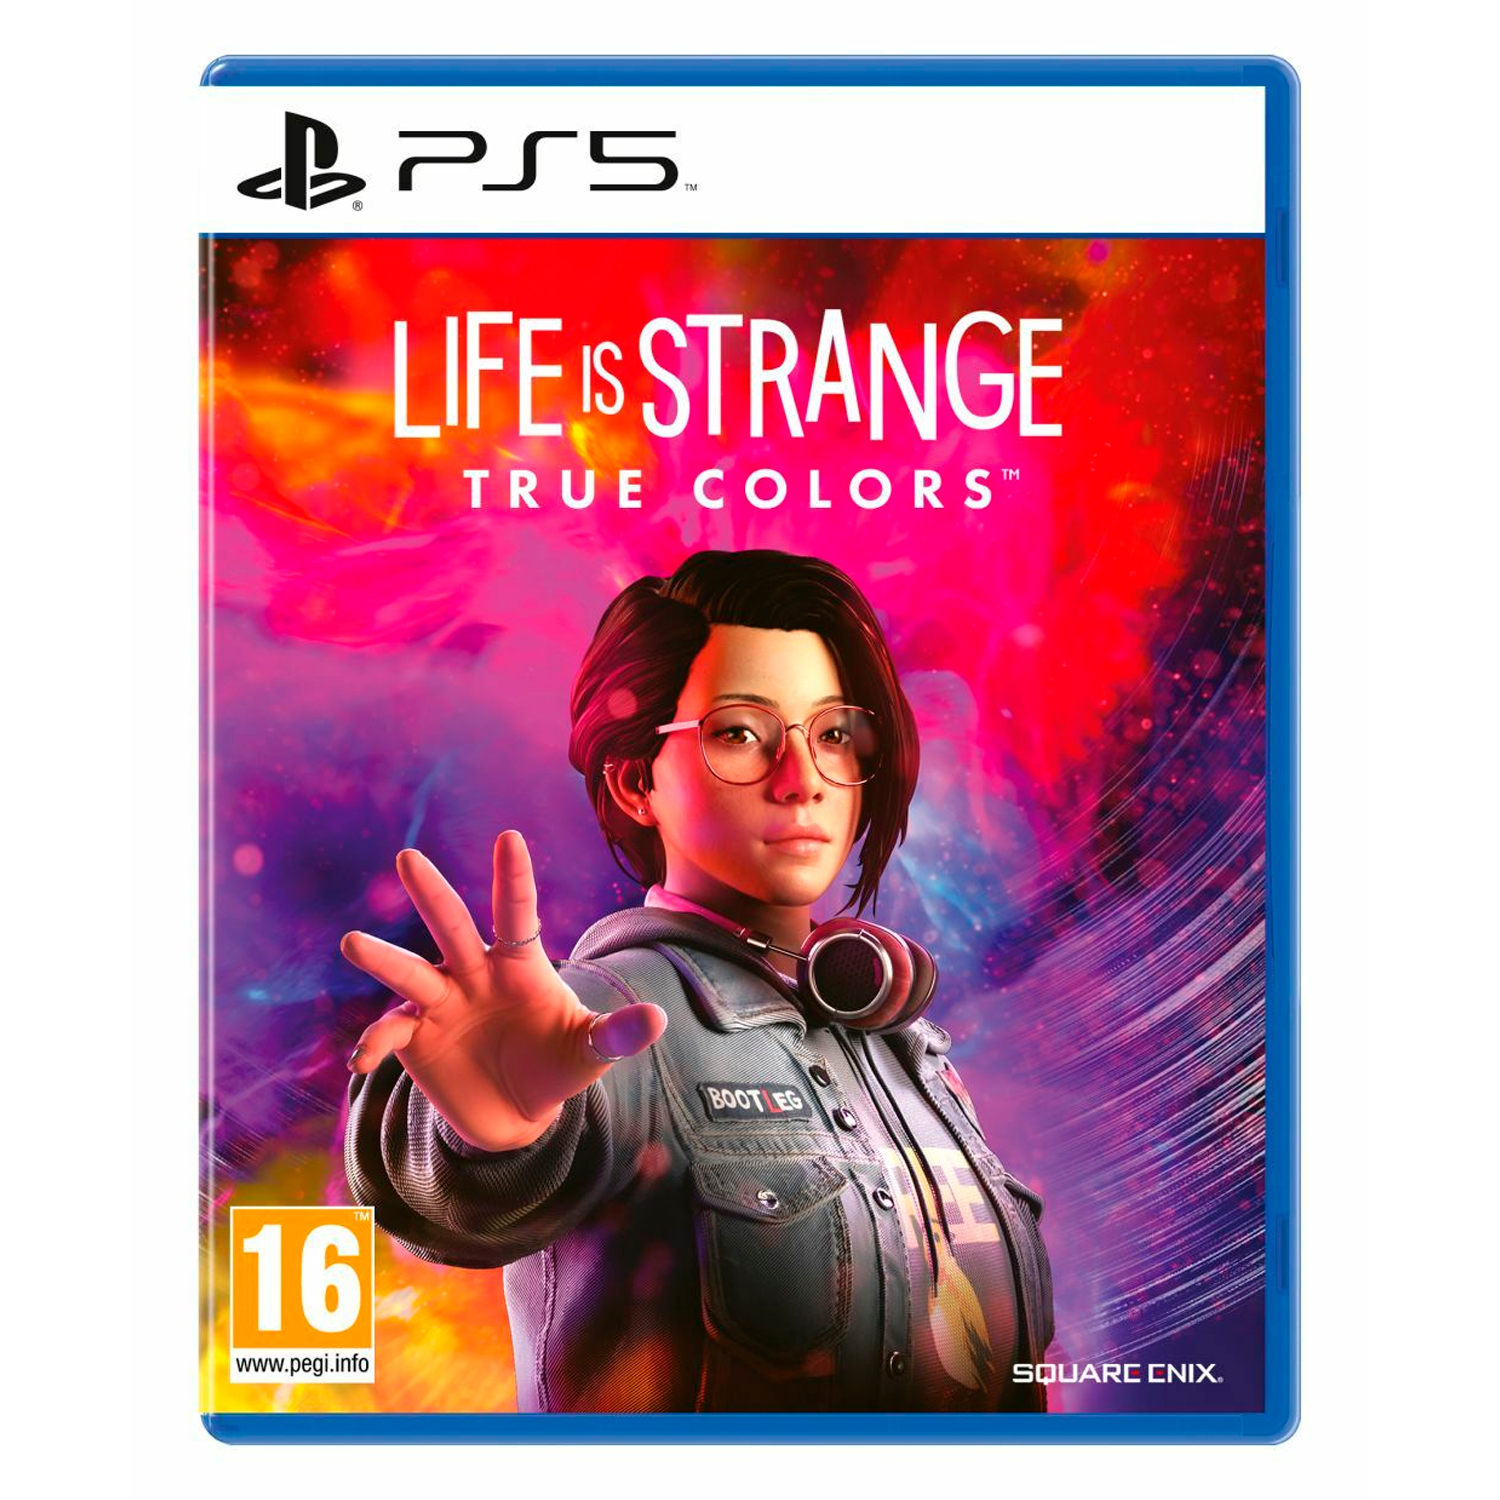 Análise: Life is Strange: True Colors (Switch) é uma jornada